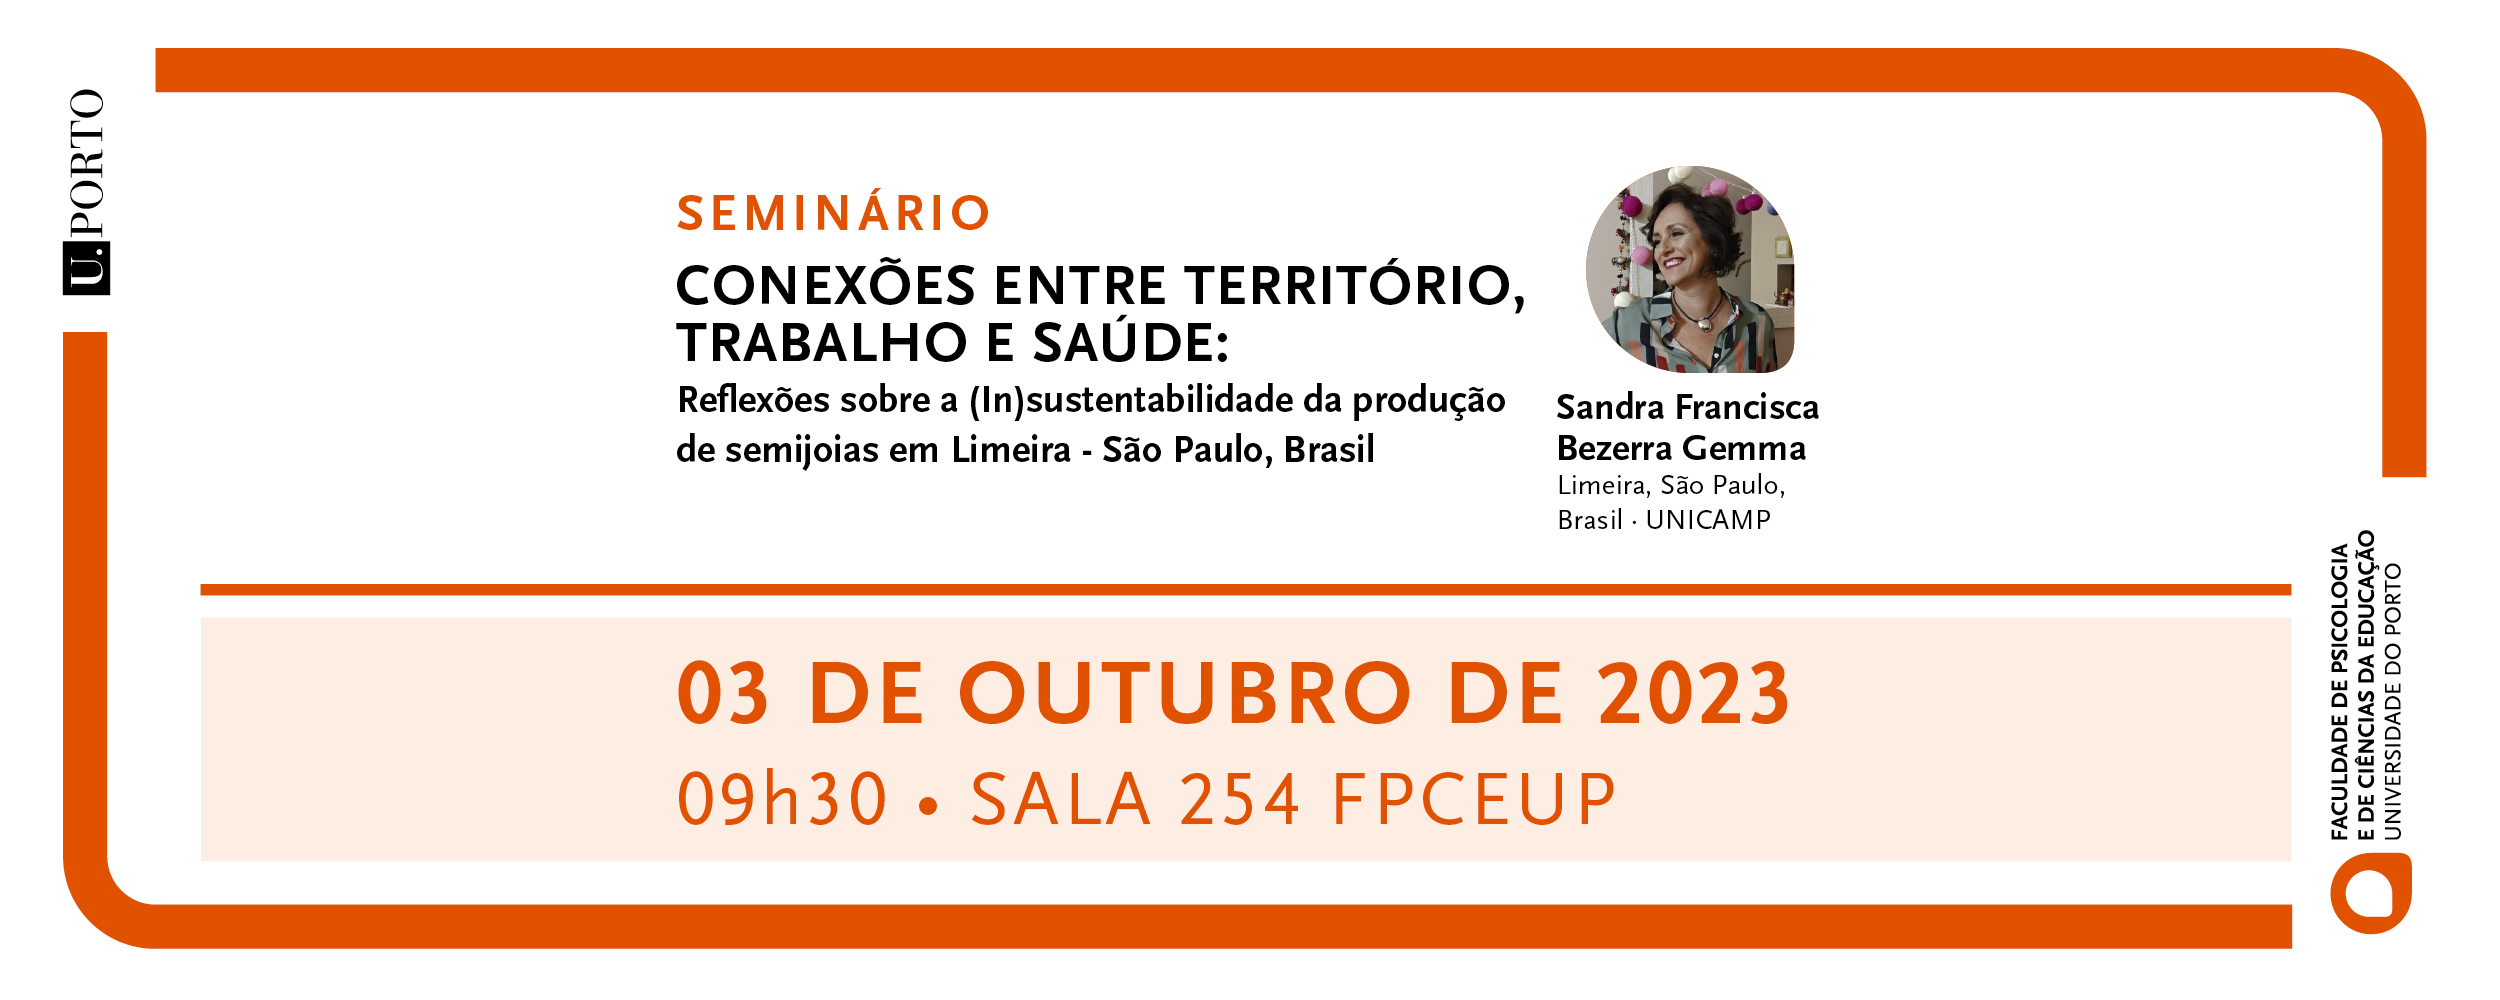 Seminário "Conexões entre território, trabalho e saúde: reflexões sobre a (In)sustentabilidade da produção de semijoias em Limeira- São Paulo, Brasil"